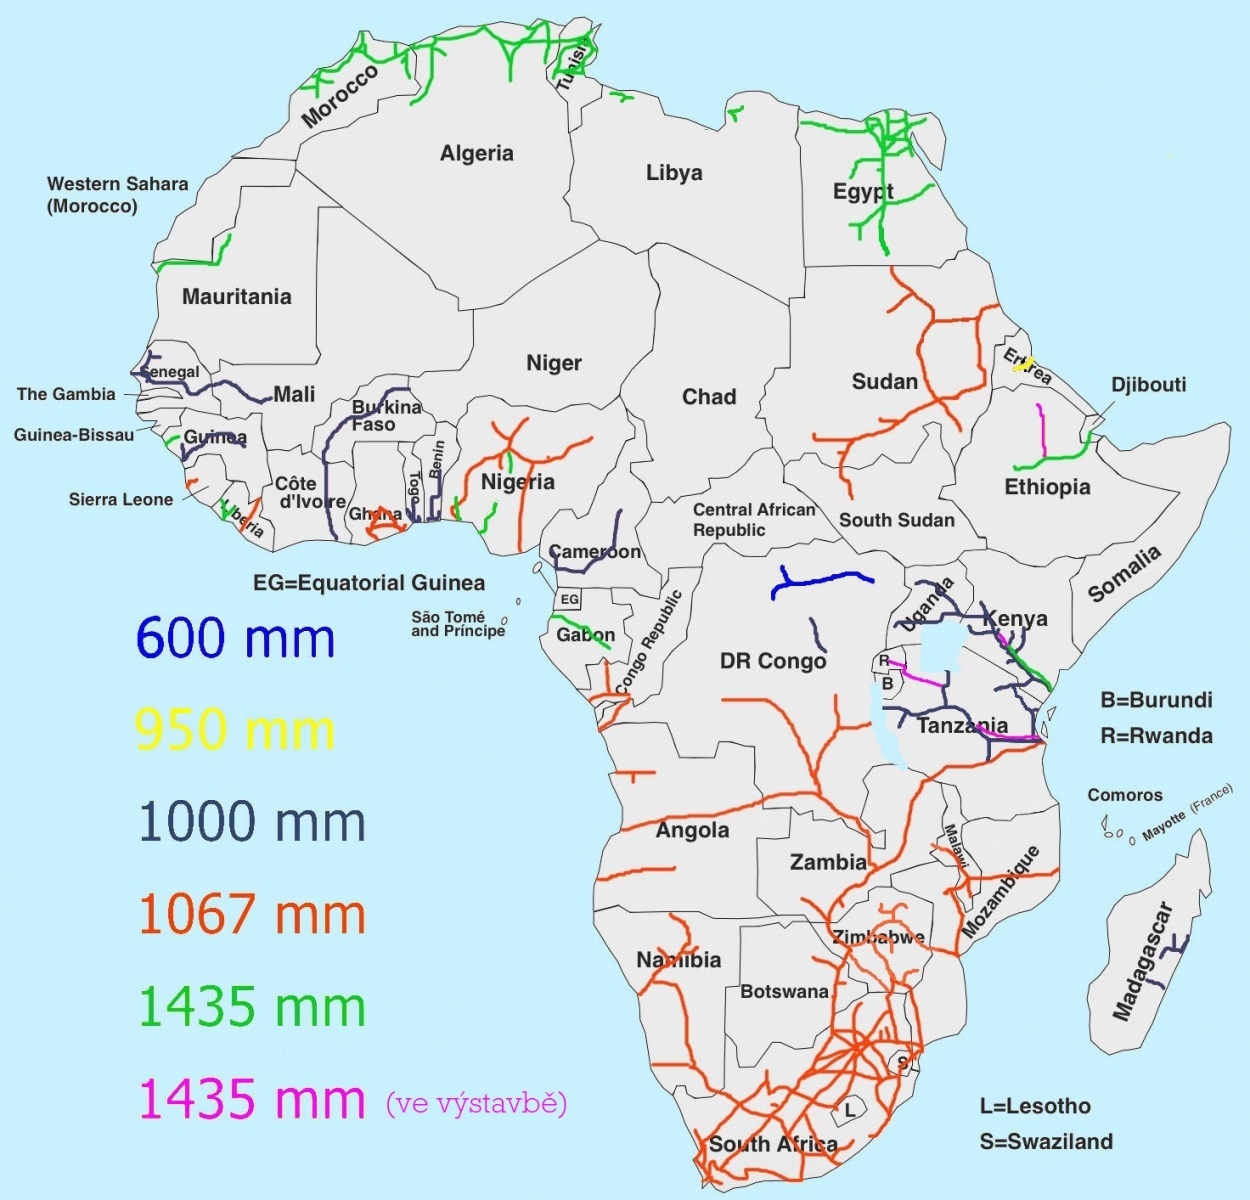 železniční mapa Afriky (upraveno podle Wikipedie)